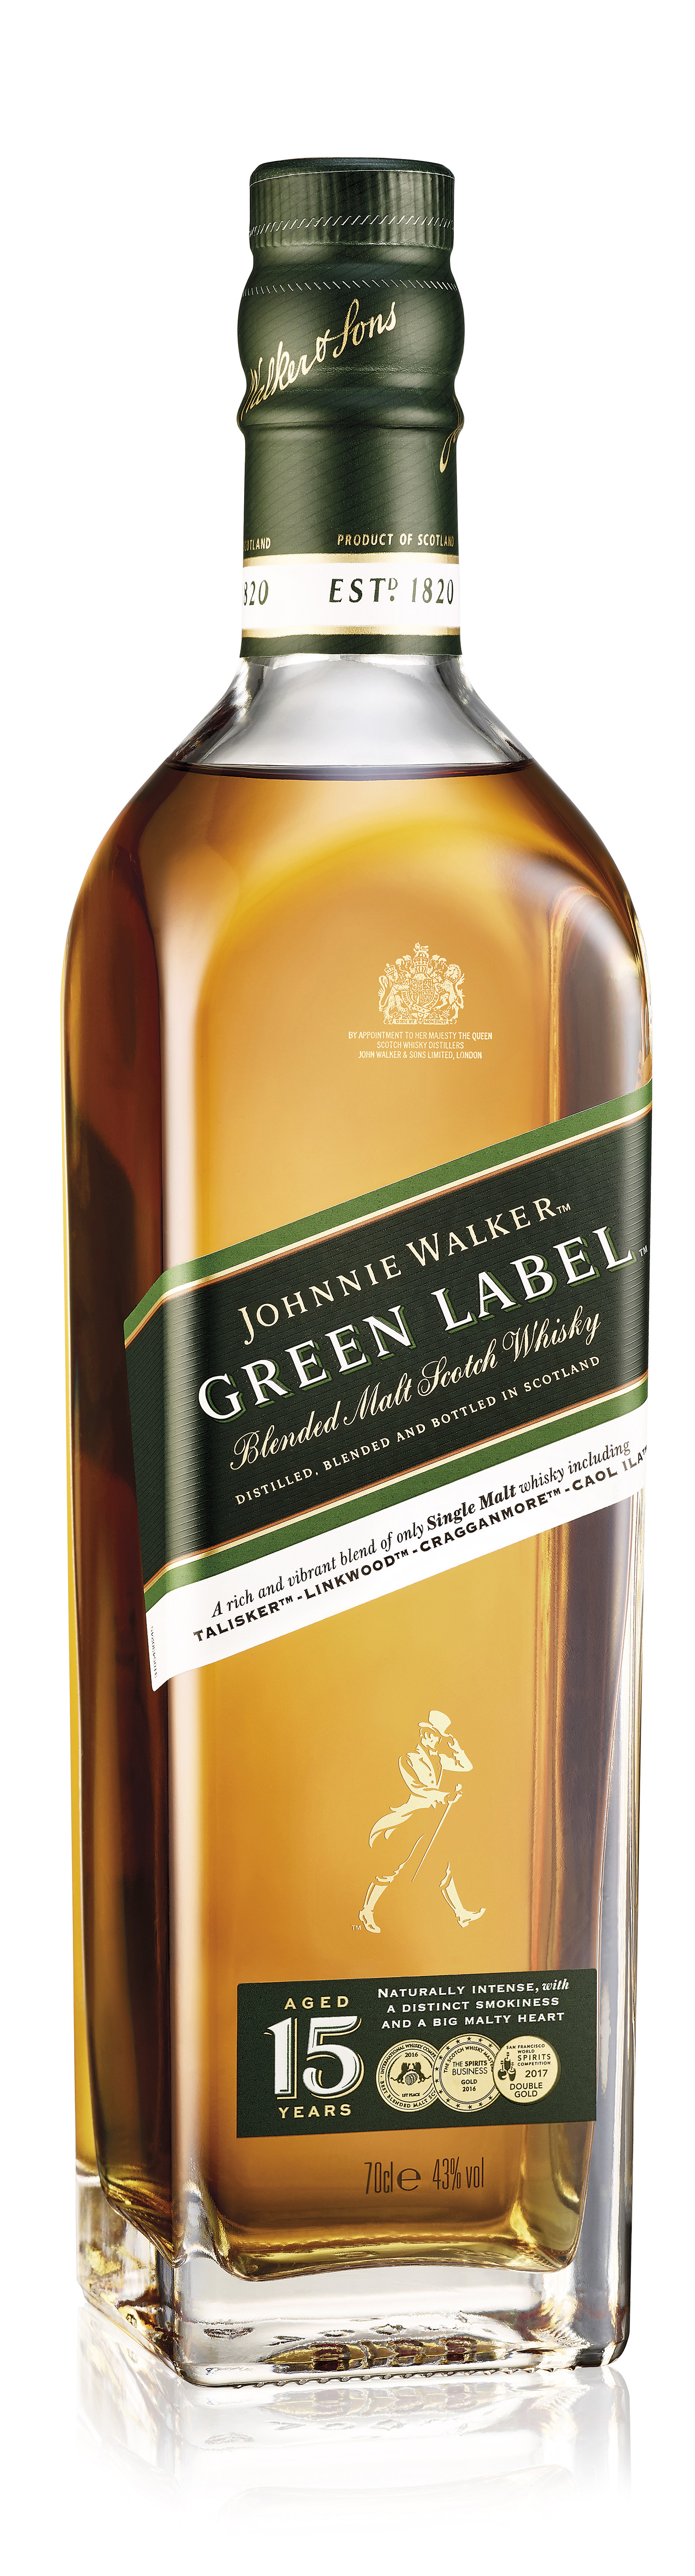 Johnnie Walker Green Label Blended Malt Scotch Whisky 43%vol. 0,7l